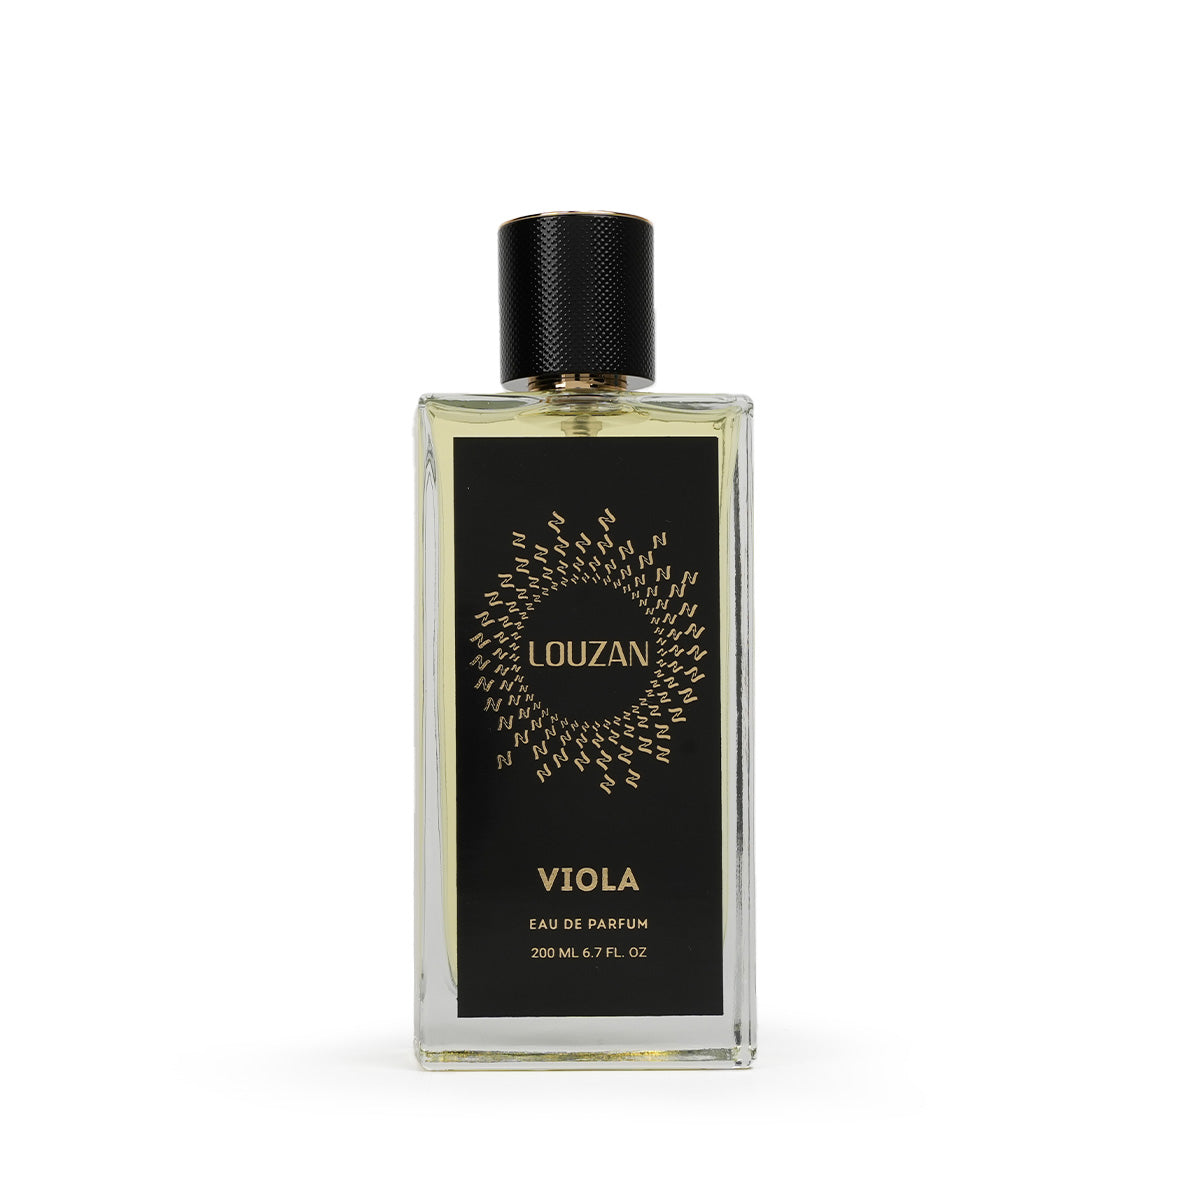 Viola Perfume - 200 ML